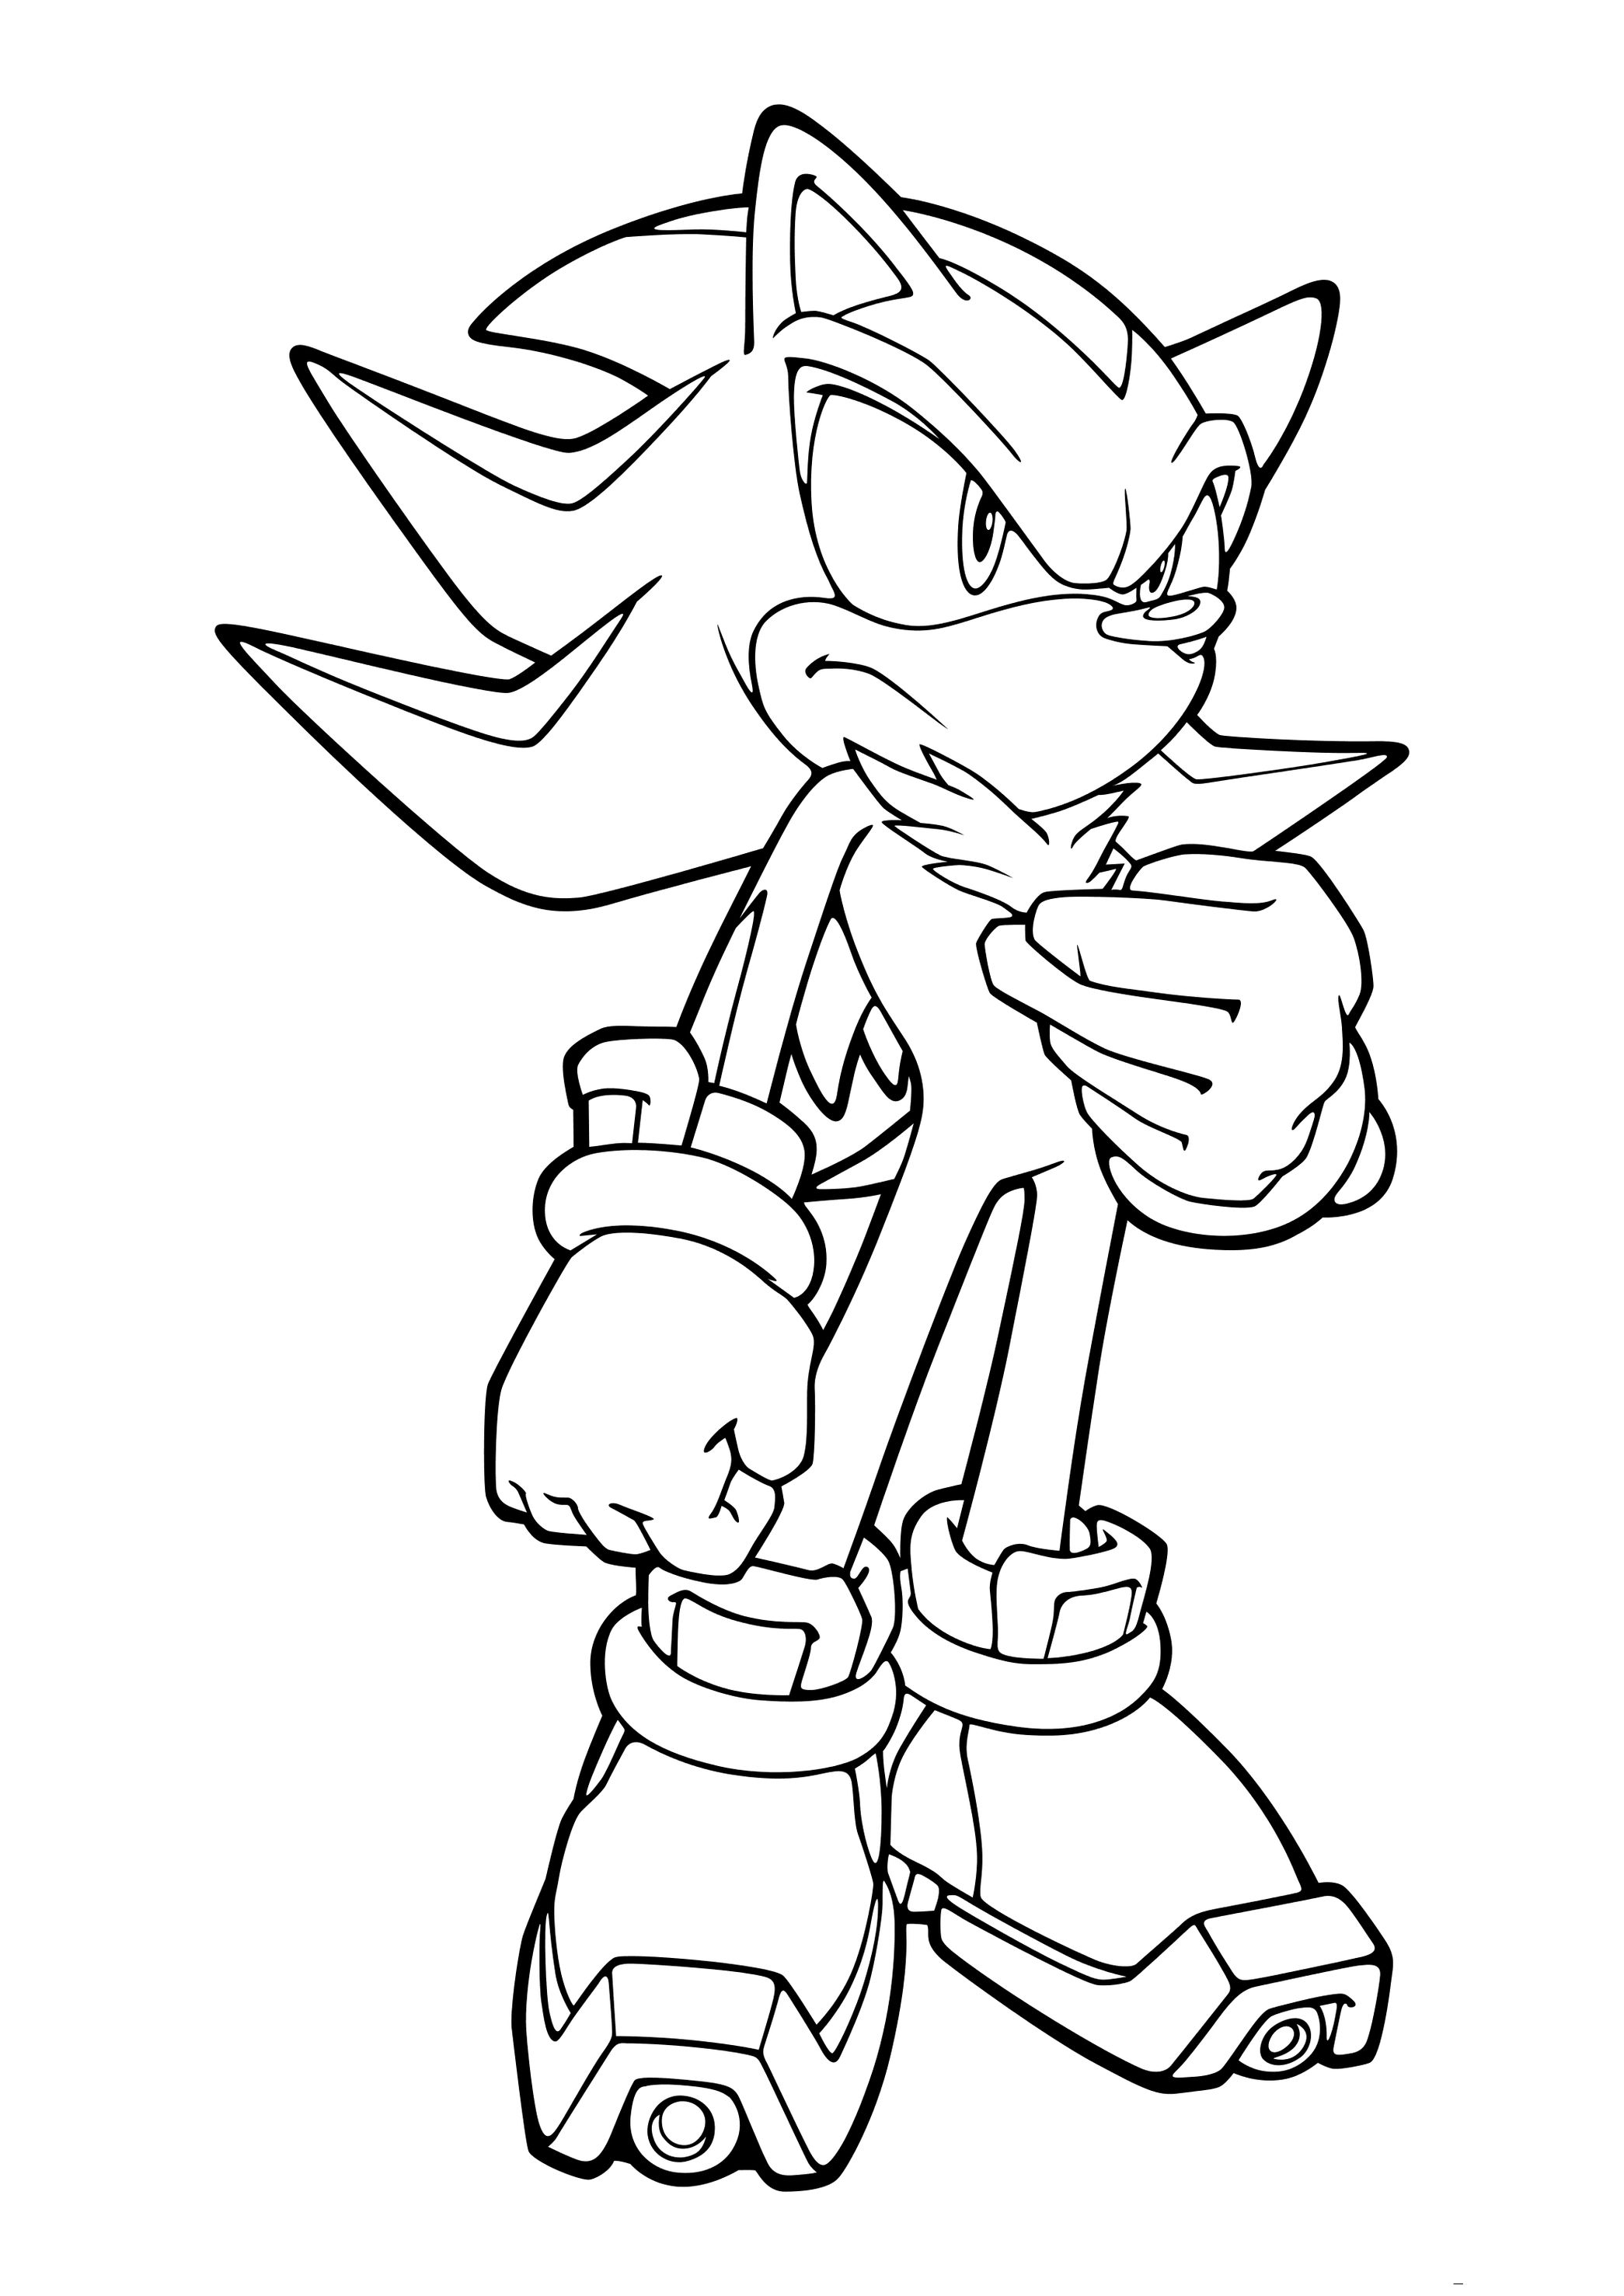 Shadow, um personagem do Sonic para colorir e imprimir